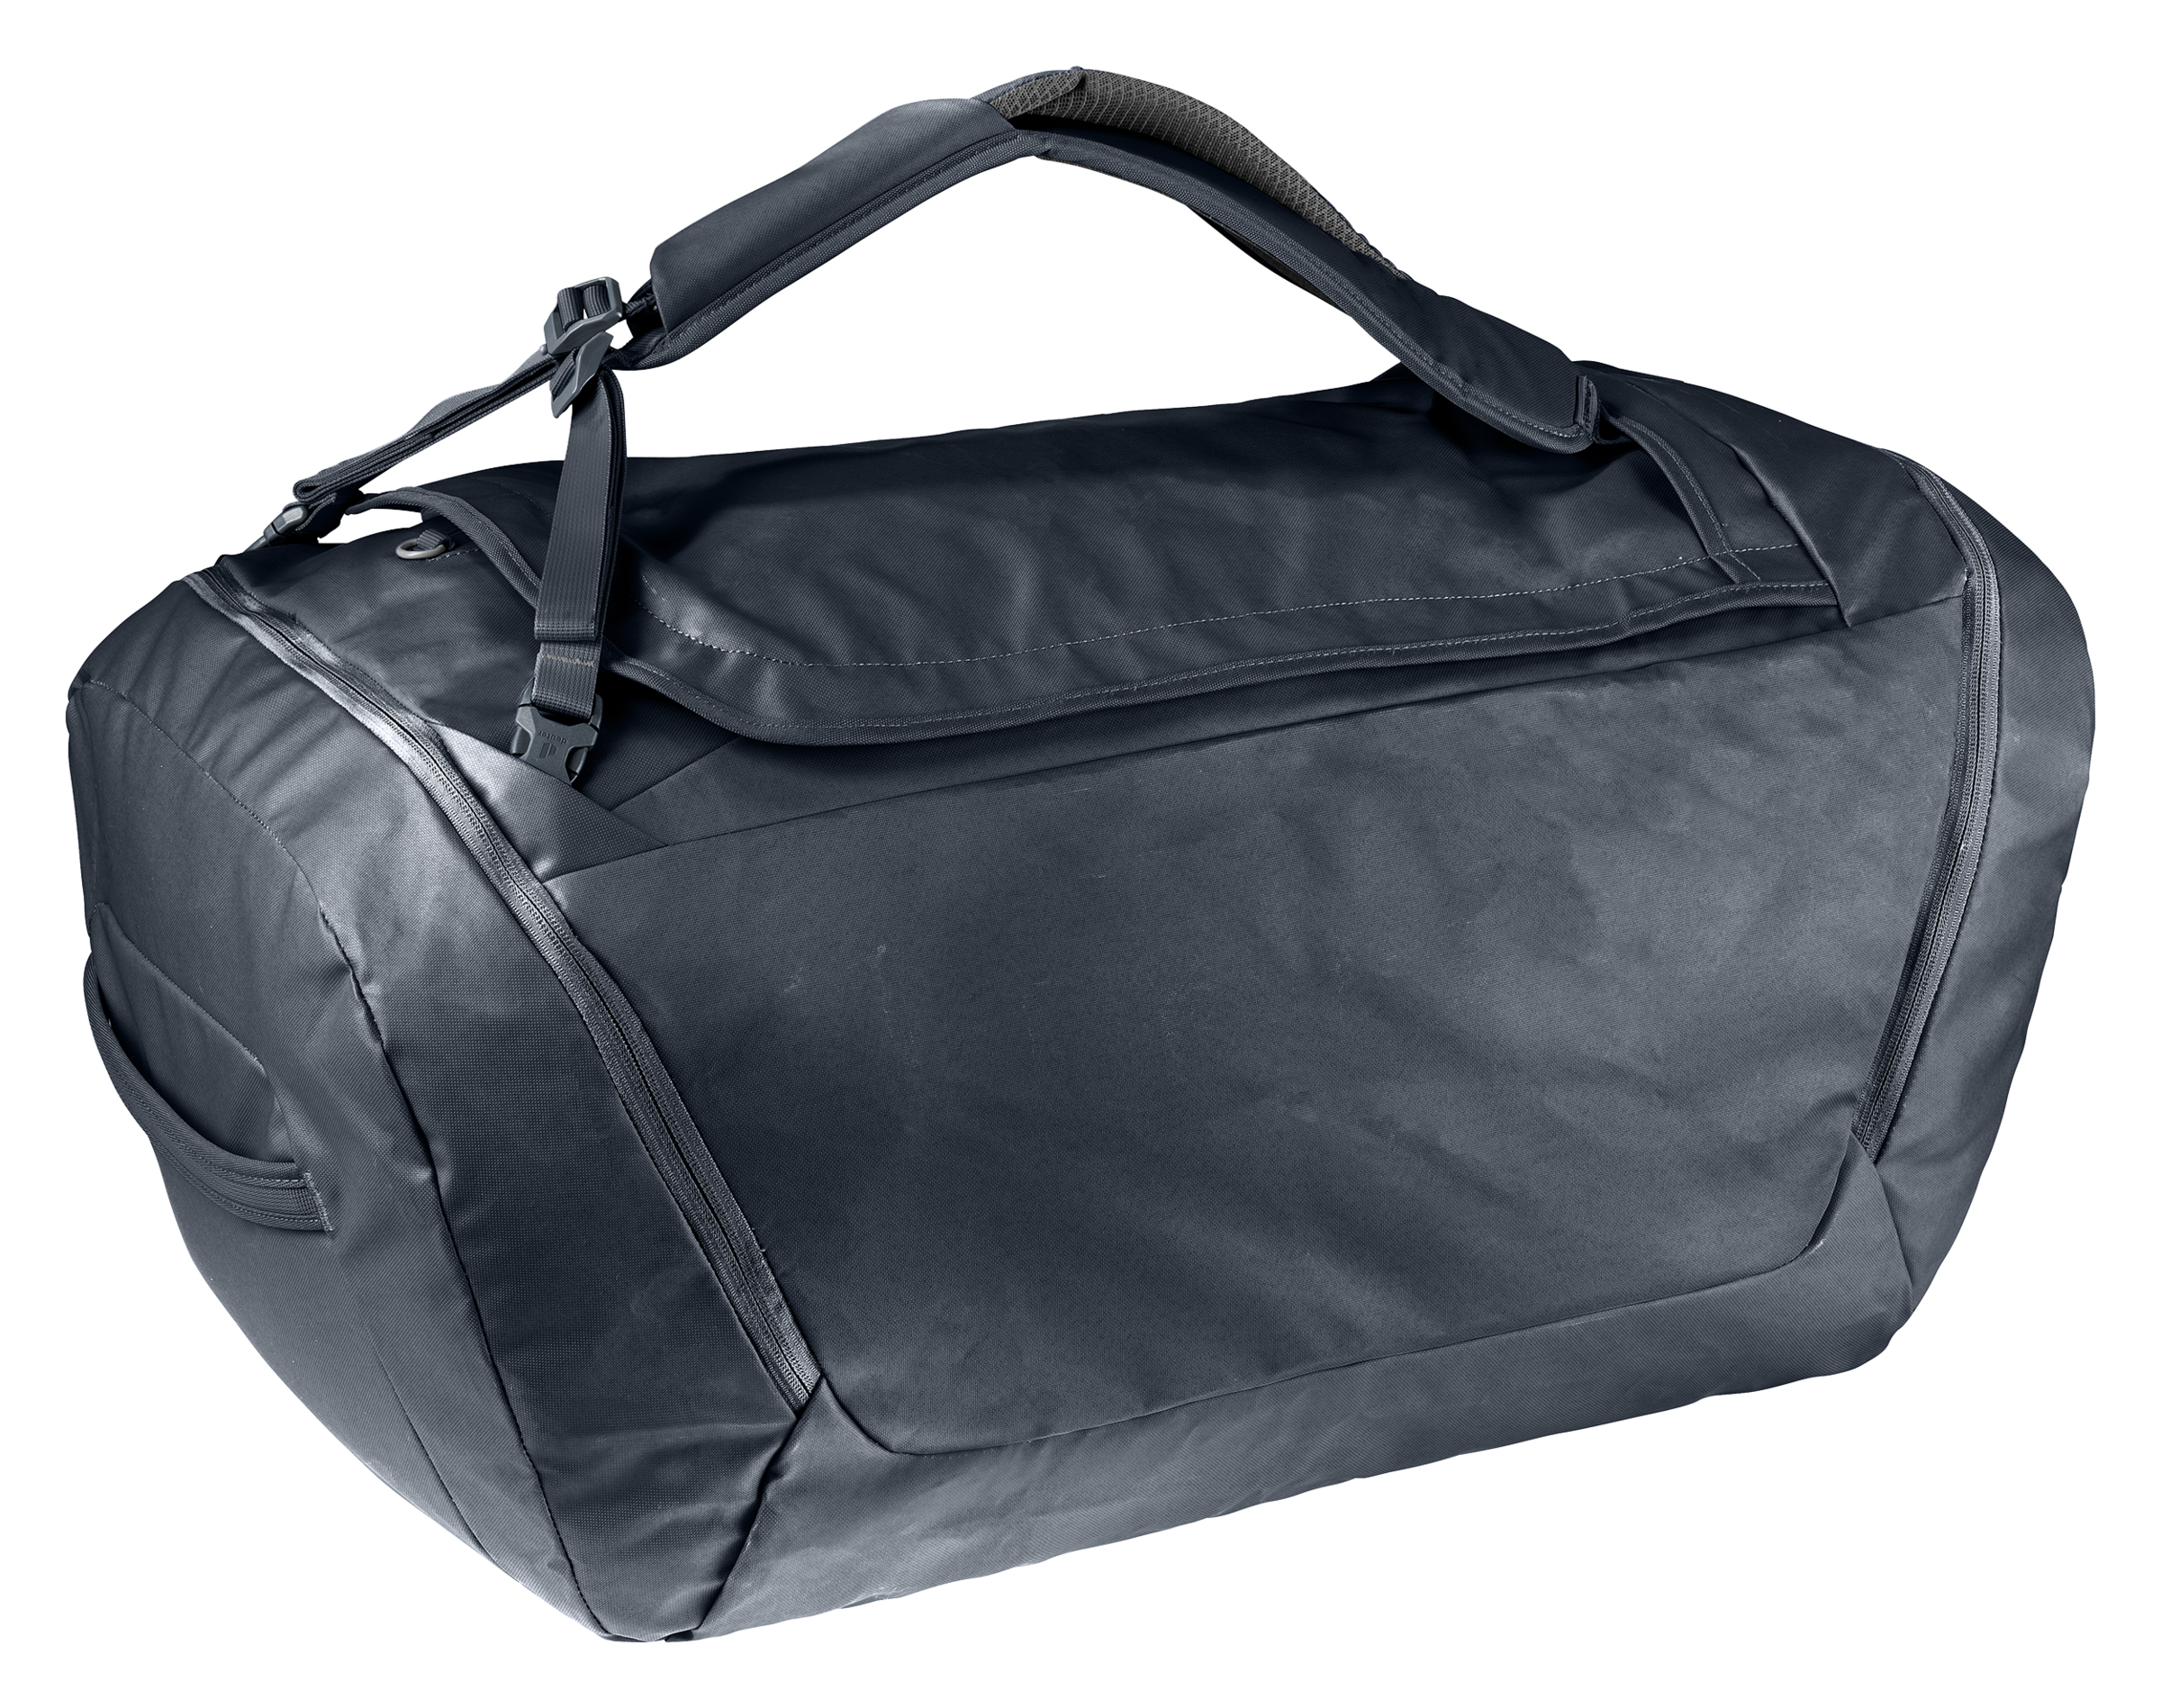 Sac de voyage et sport etanche, Duffel Bag impermeable chez